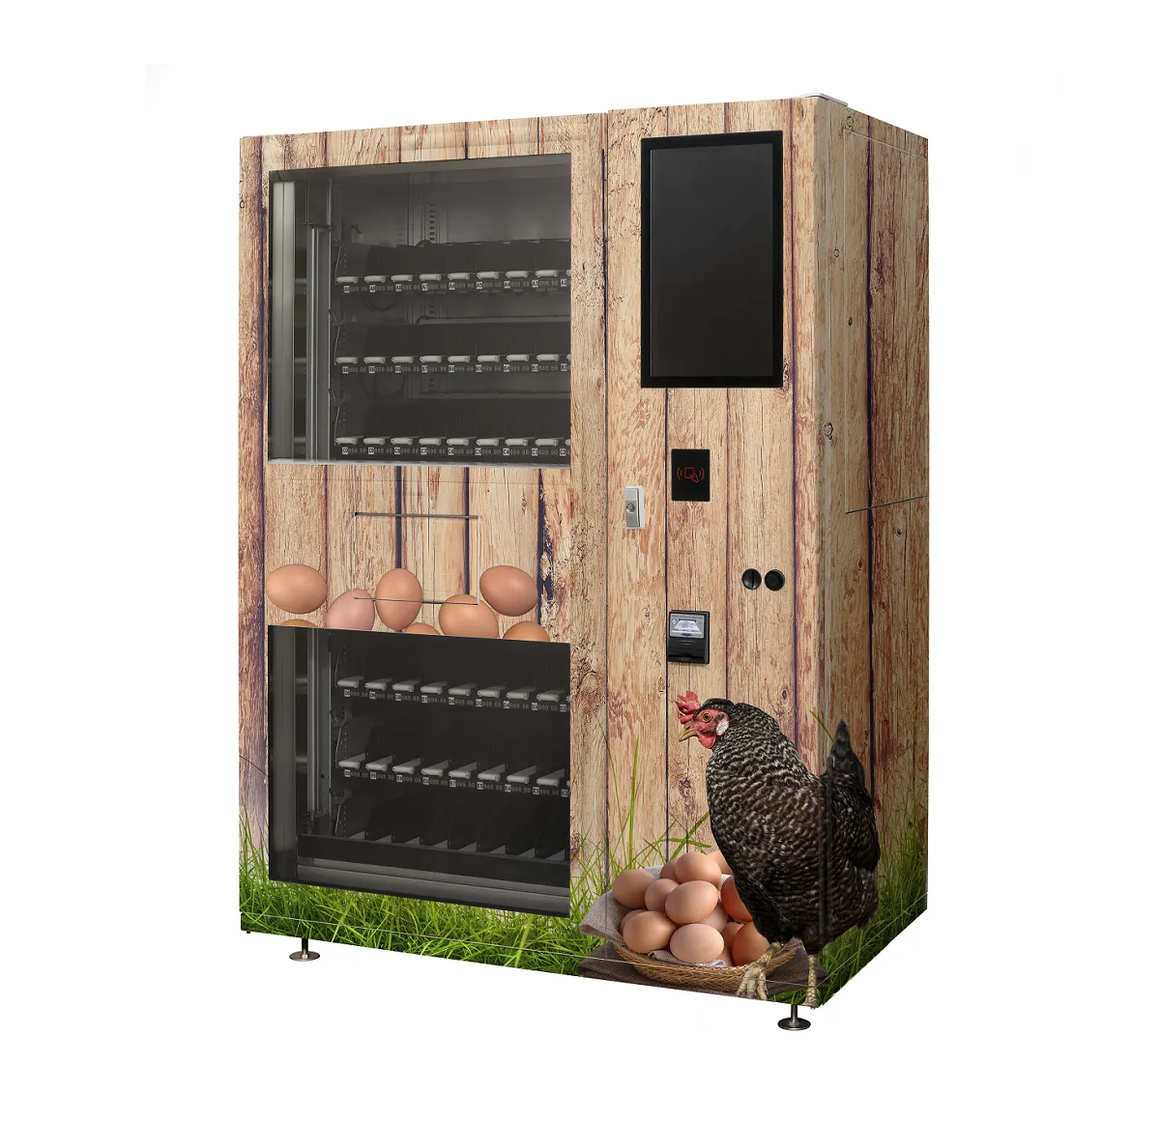 Lemgo egg vending machine laminated